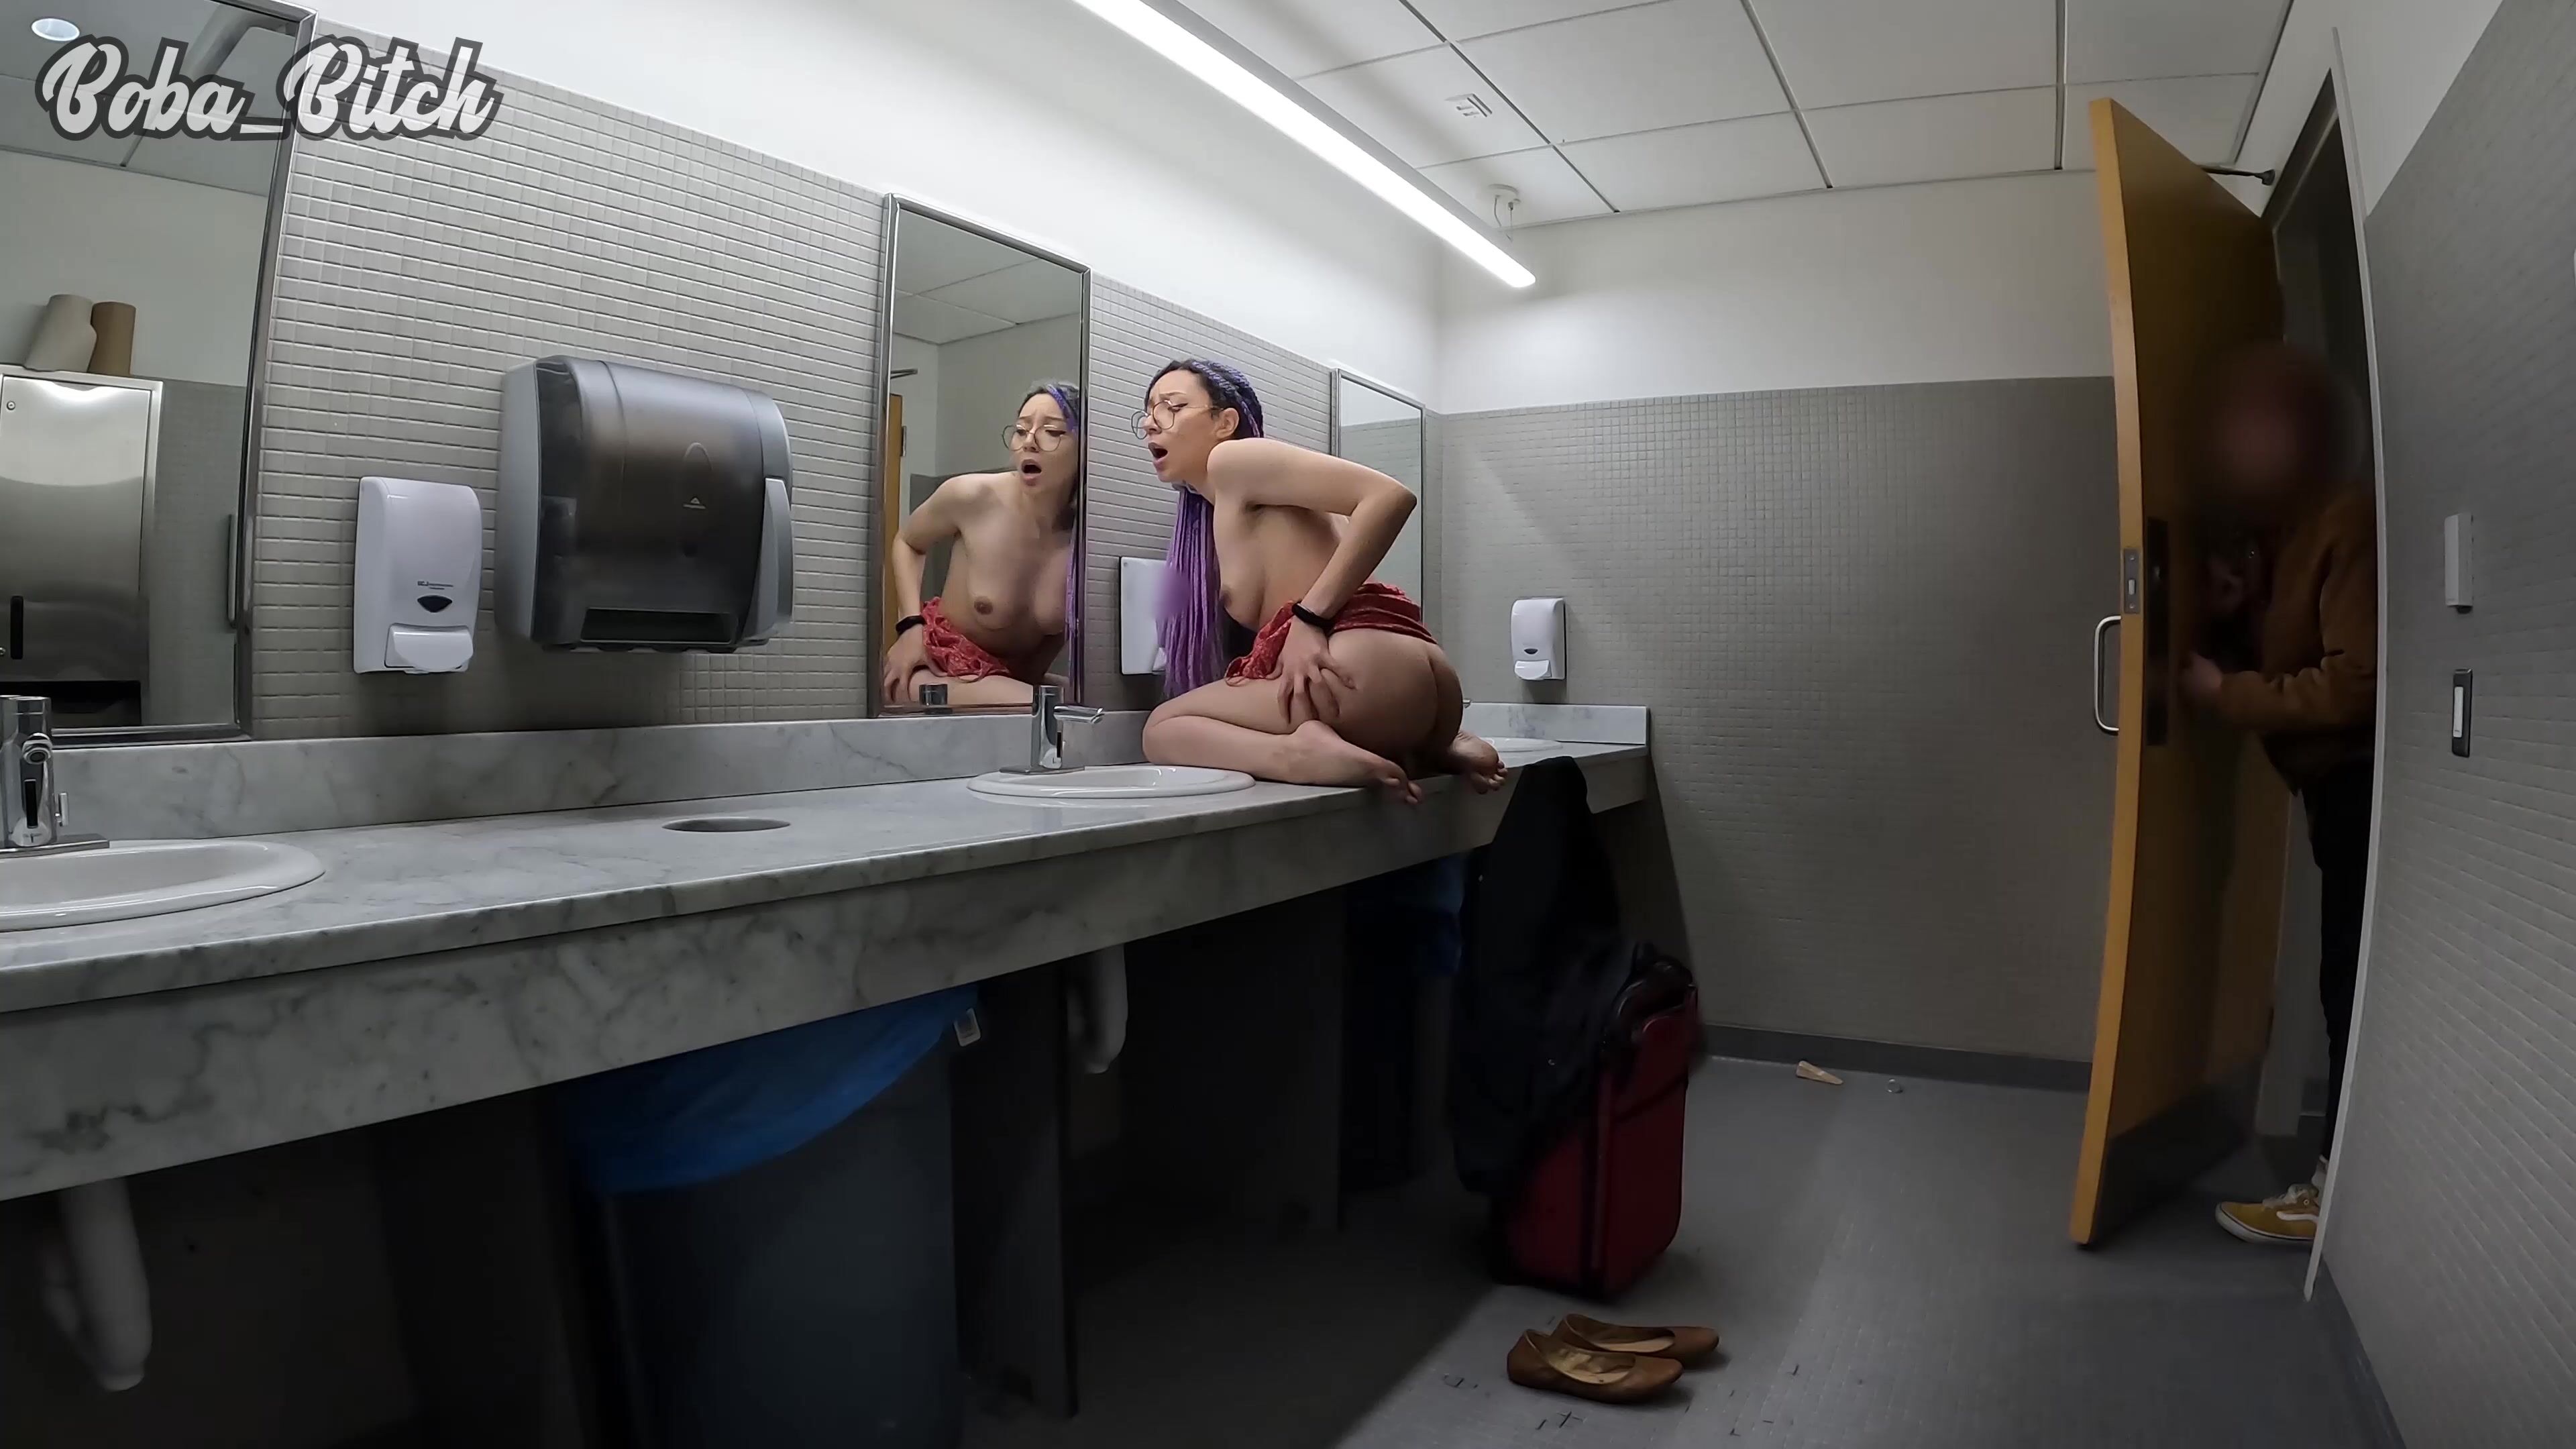 Boba_Bitch CAUGHT Masturbating in Airport Bathroom